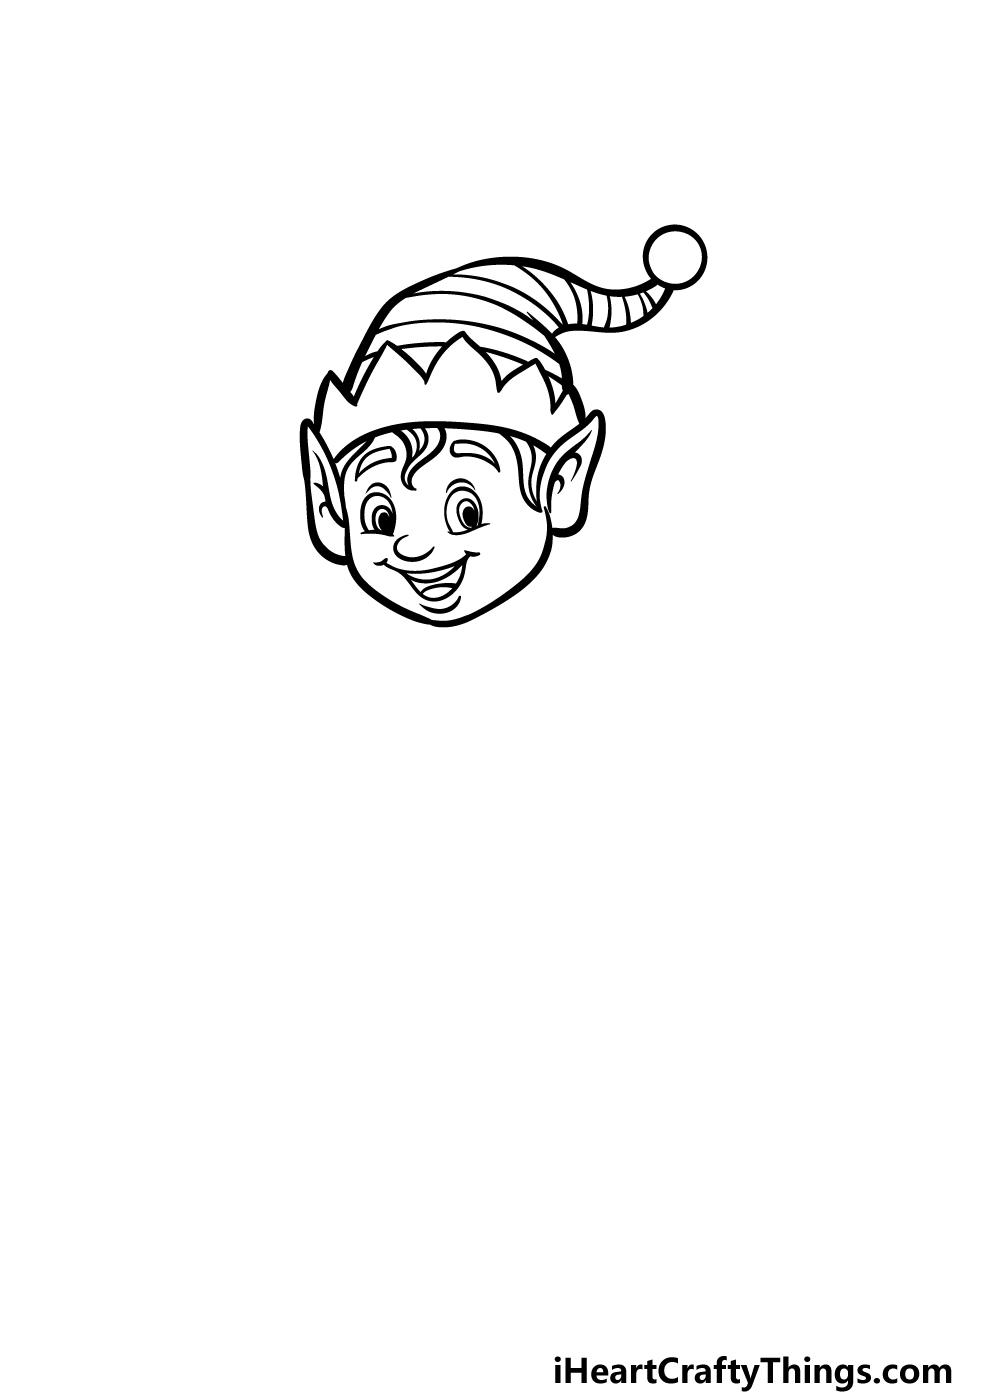 how to draw a cartoon elf step 2